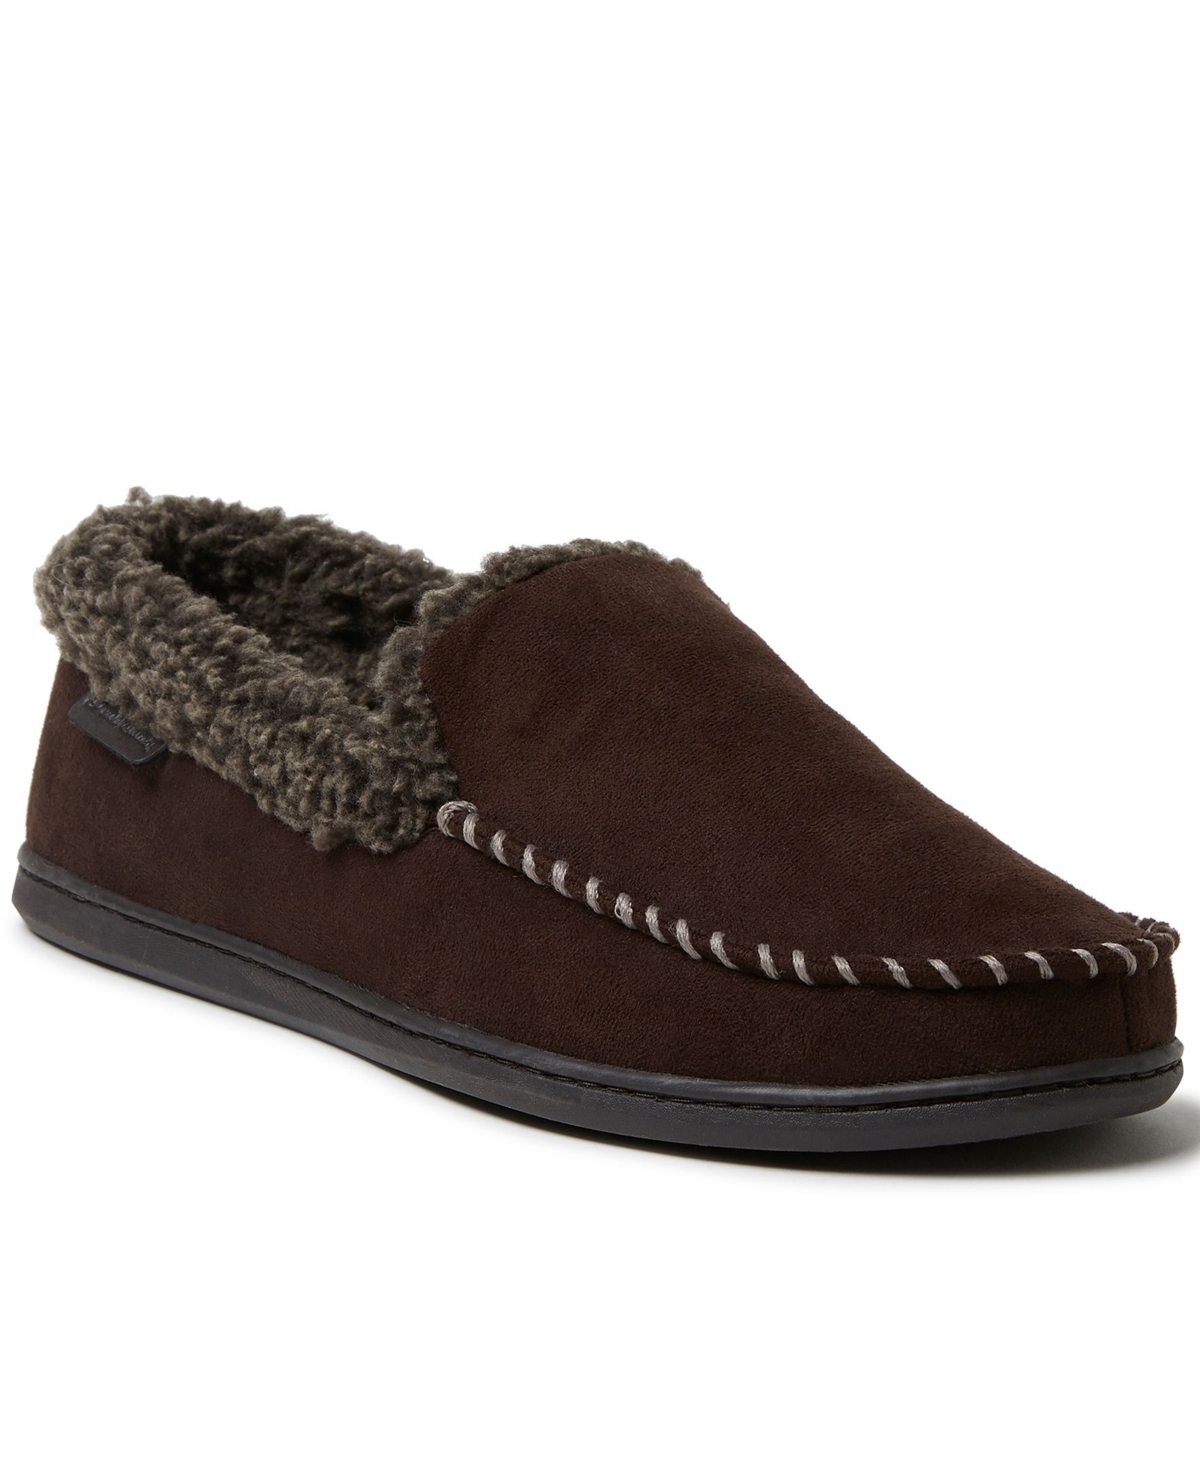 Dearfoams Men's Eli Microsuede Moccasin Slippers Men's Shoes